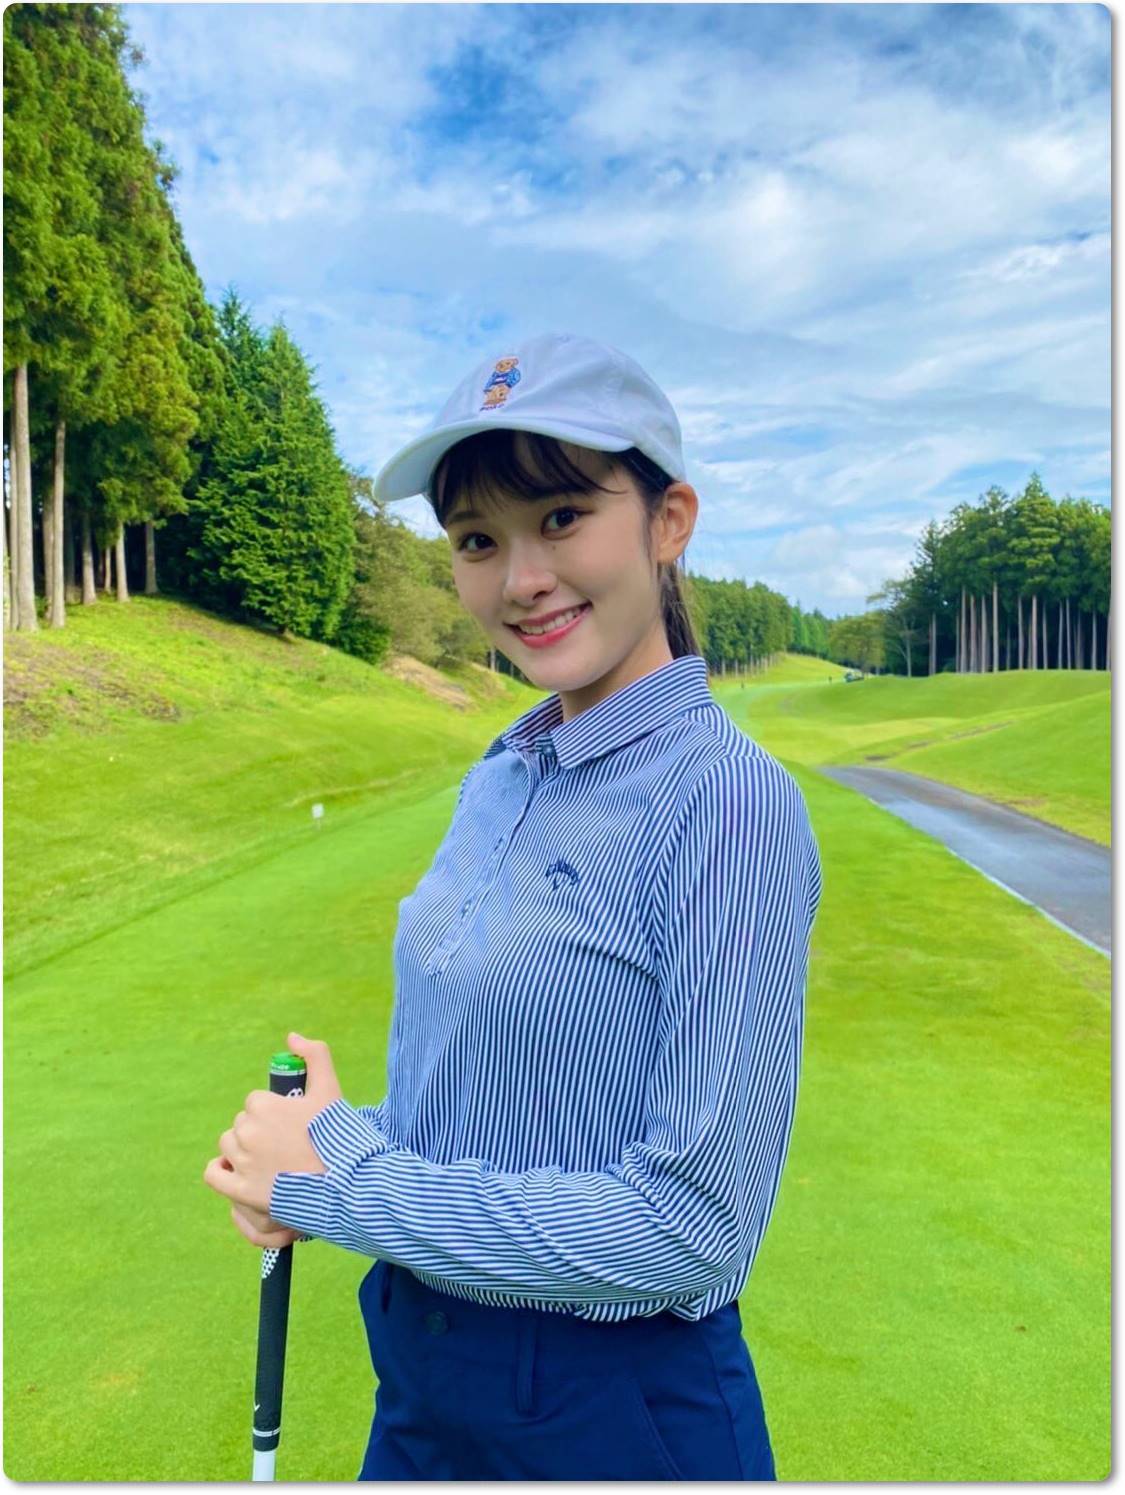 増田紗織アナのかわいいゴルフウェア画像